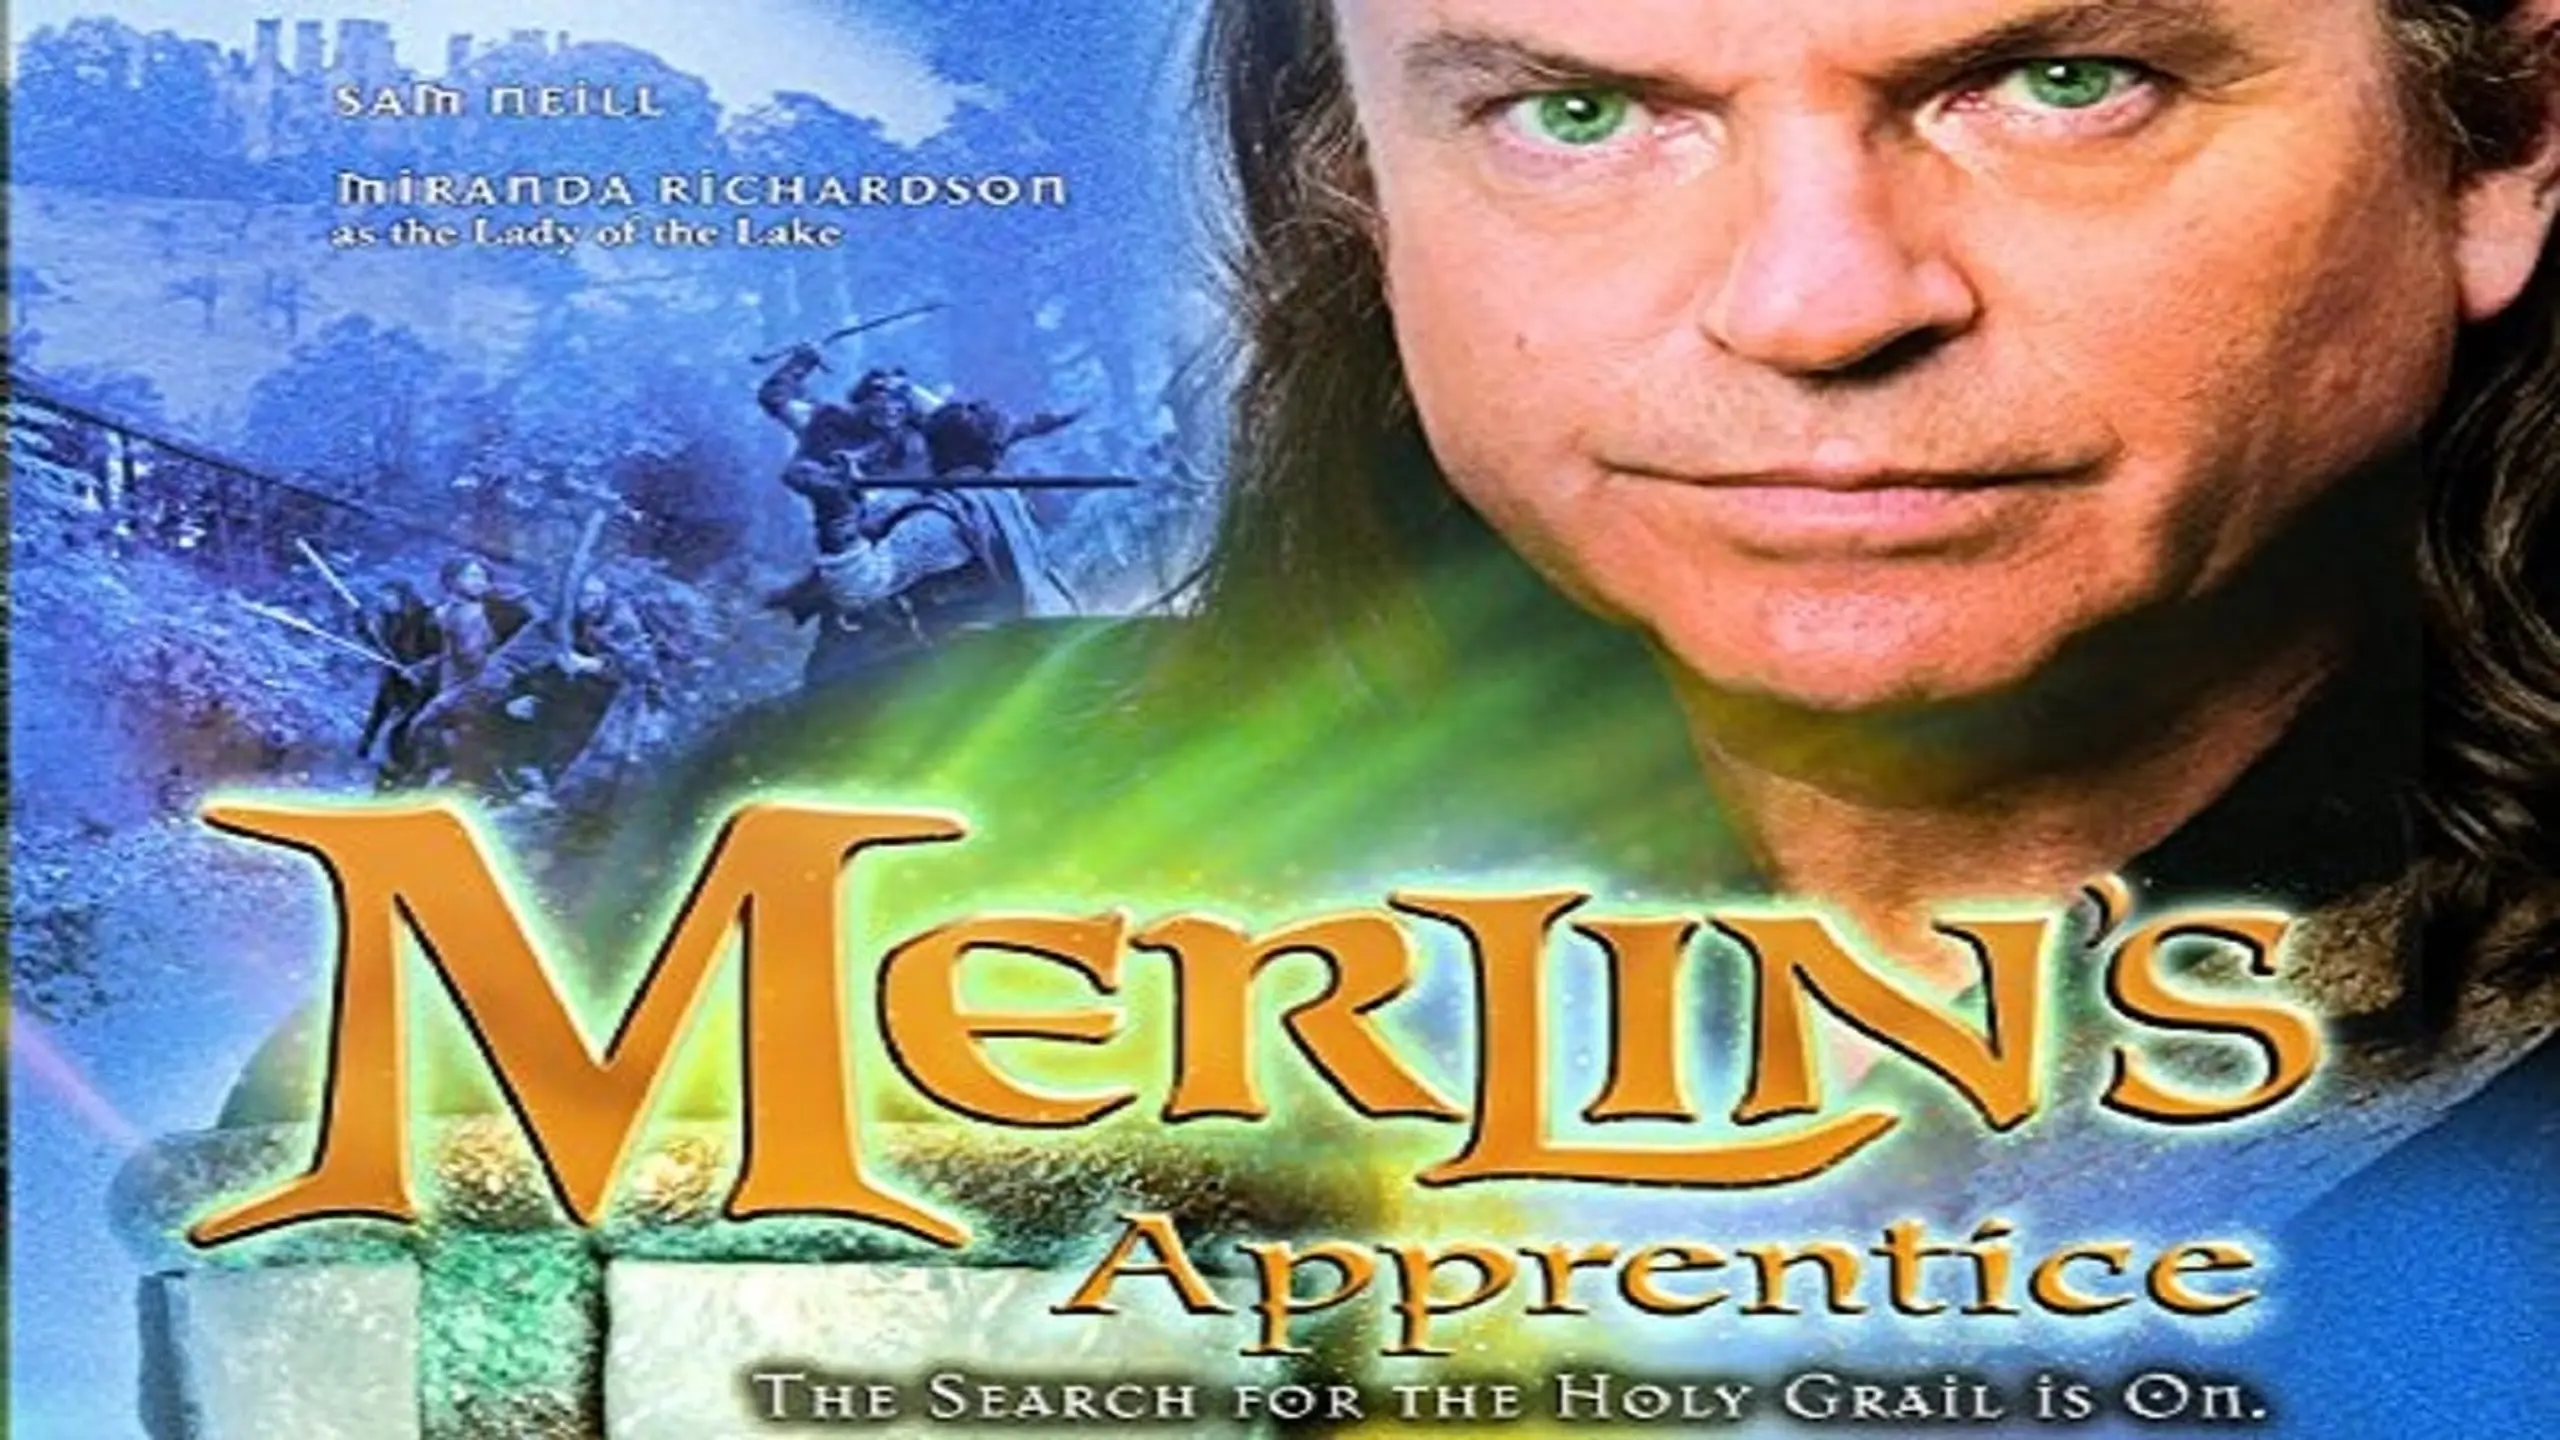 Merlin 2 - Der letzte Zauberer